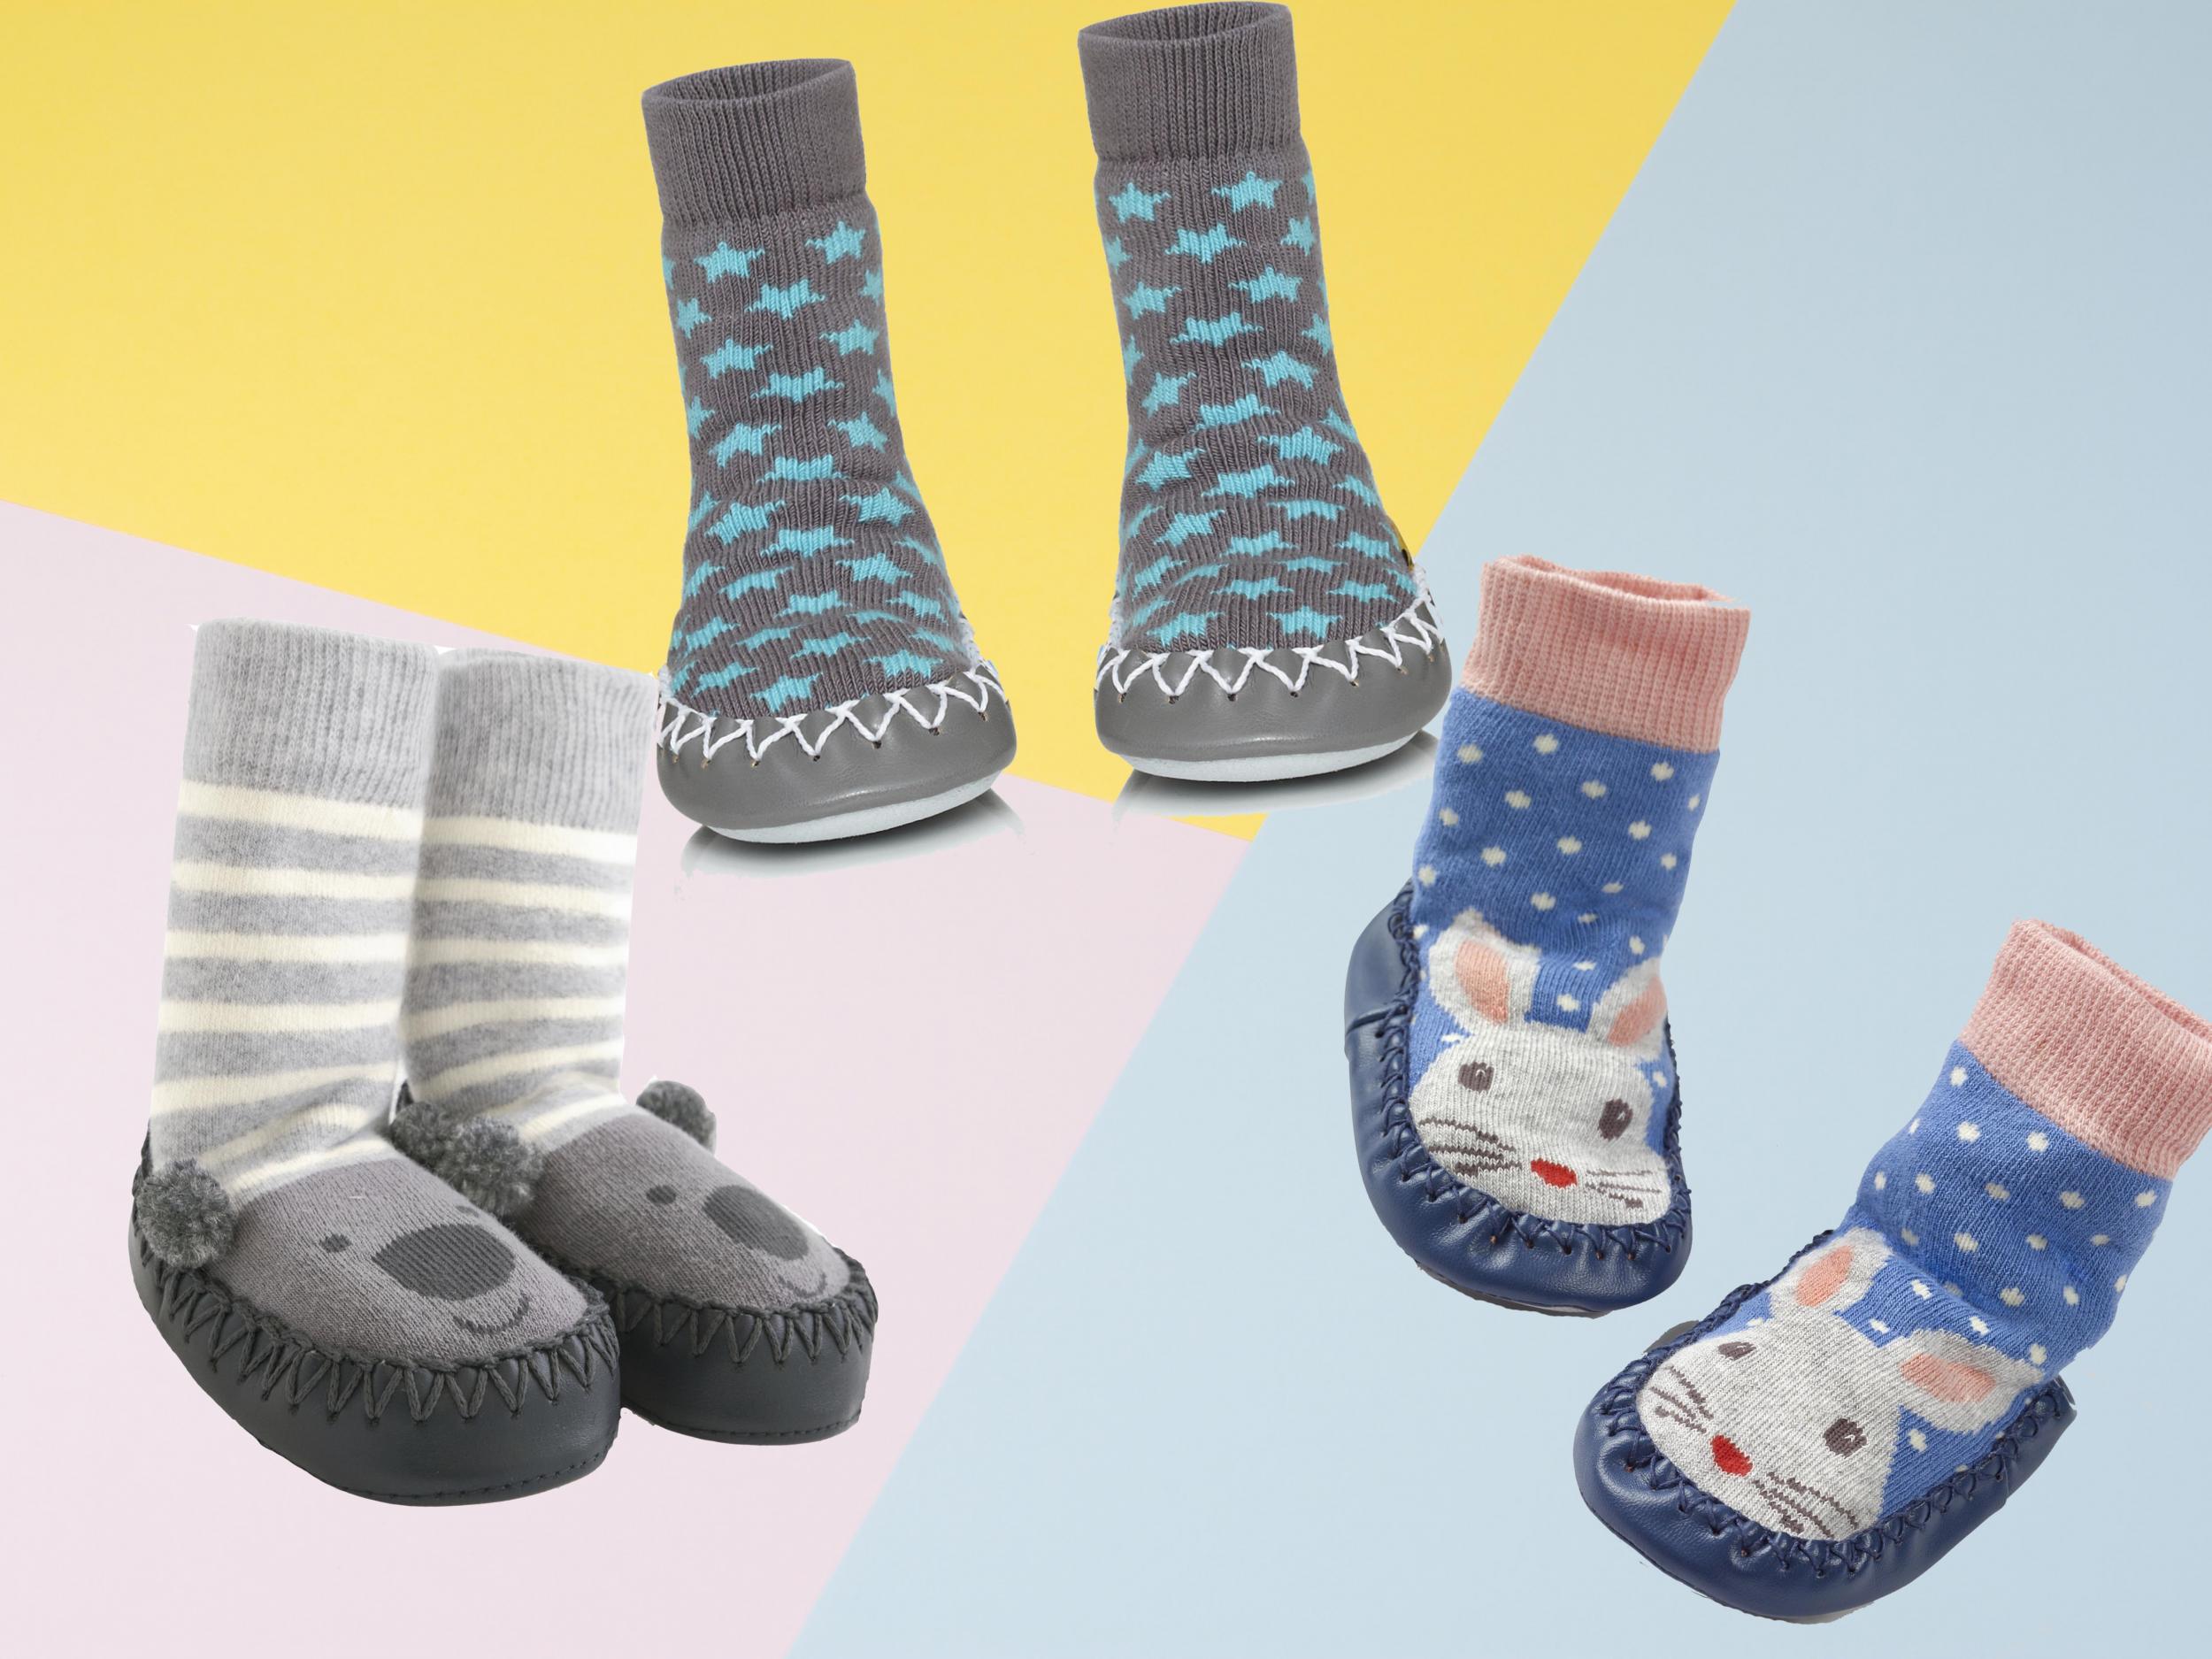 Dream Bridge Kids Slipper Socks Anti-Slip Knit Sock Slippers for Boys Girls Indoor Outdoor Socks with Rubber Bottom Sole